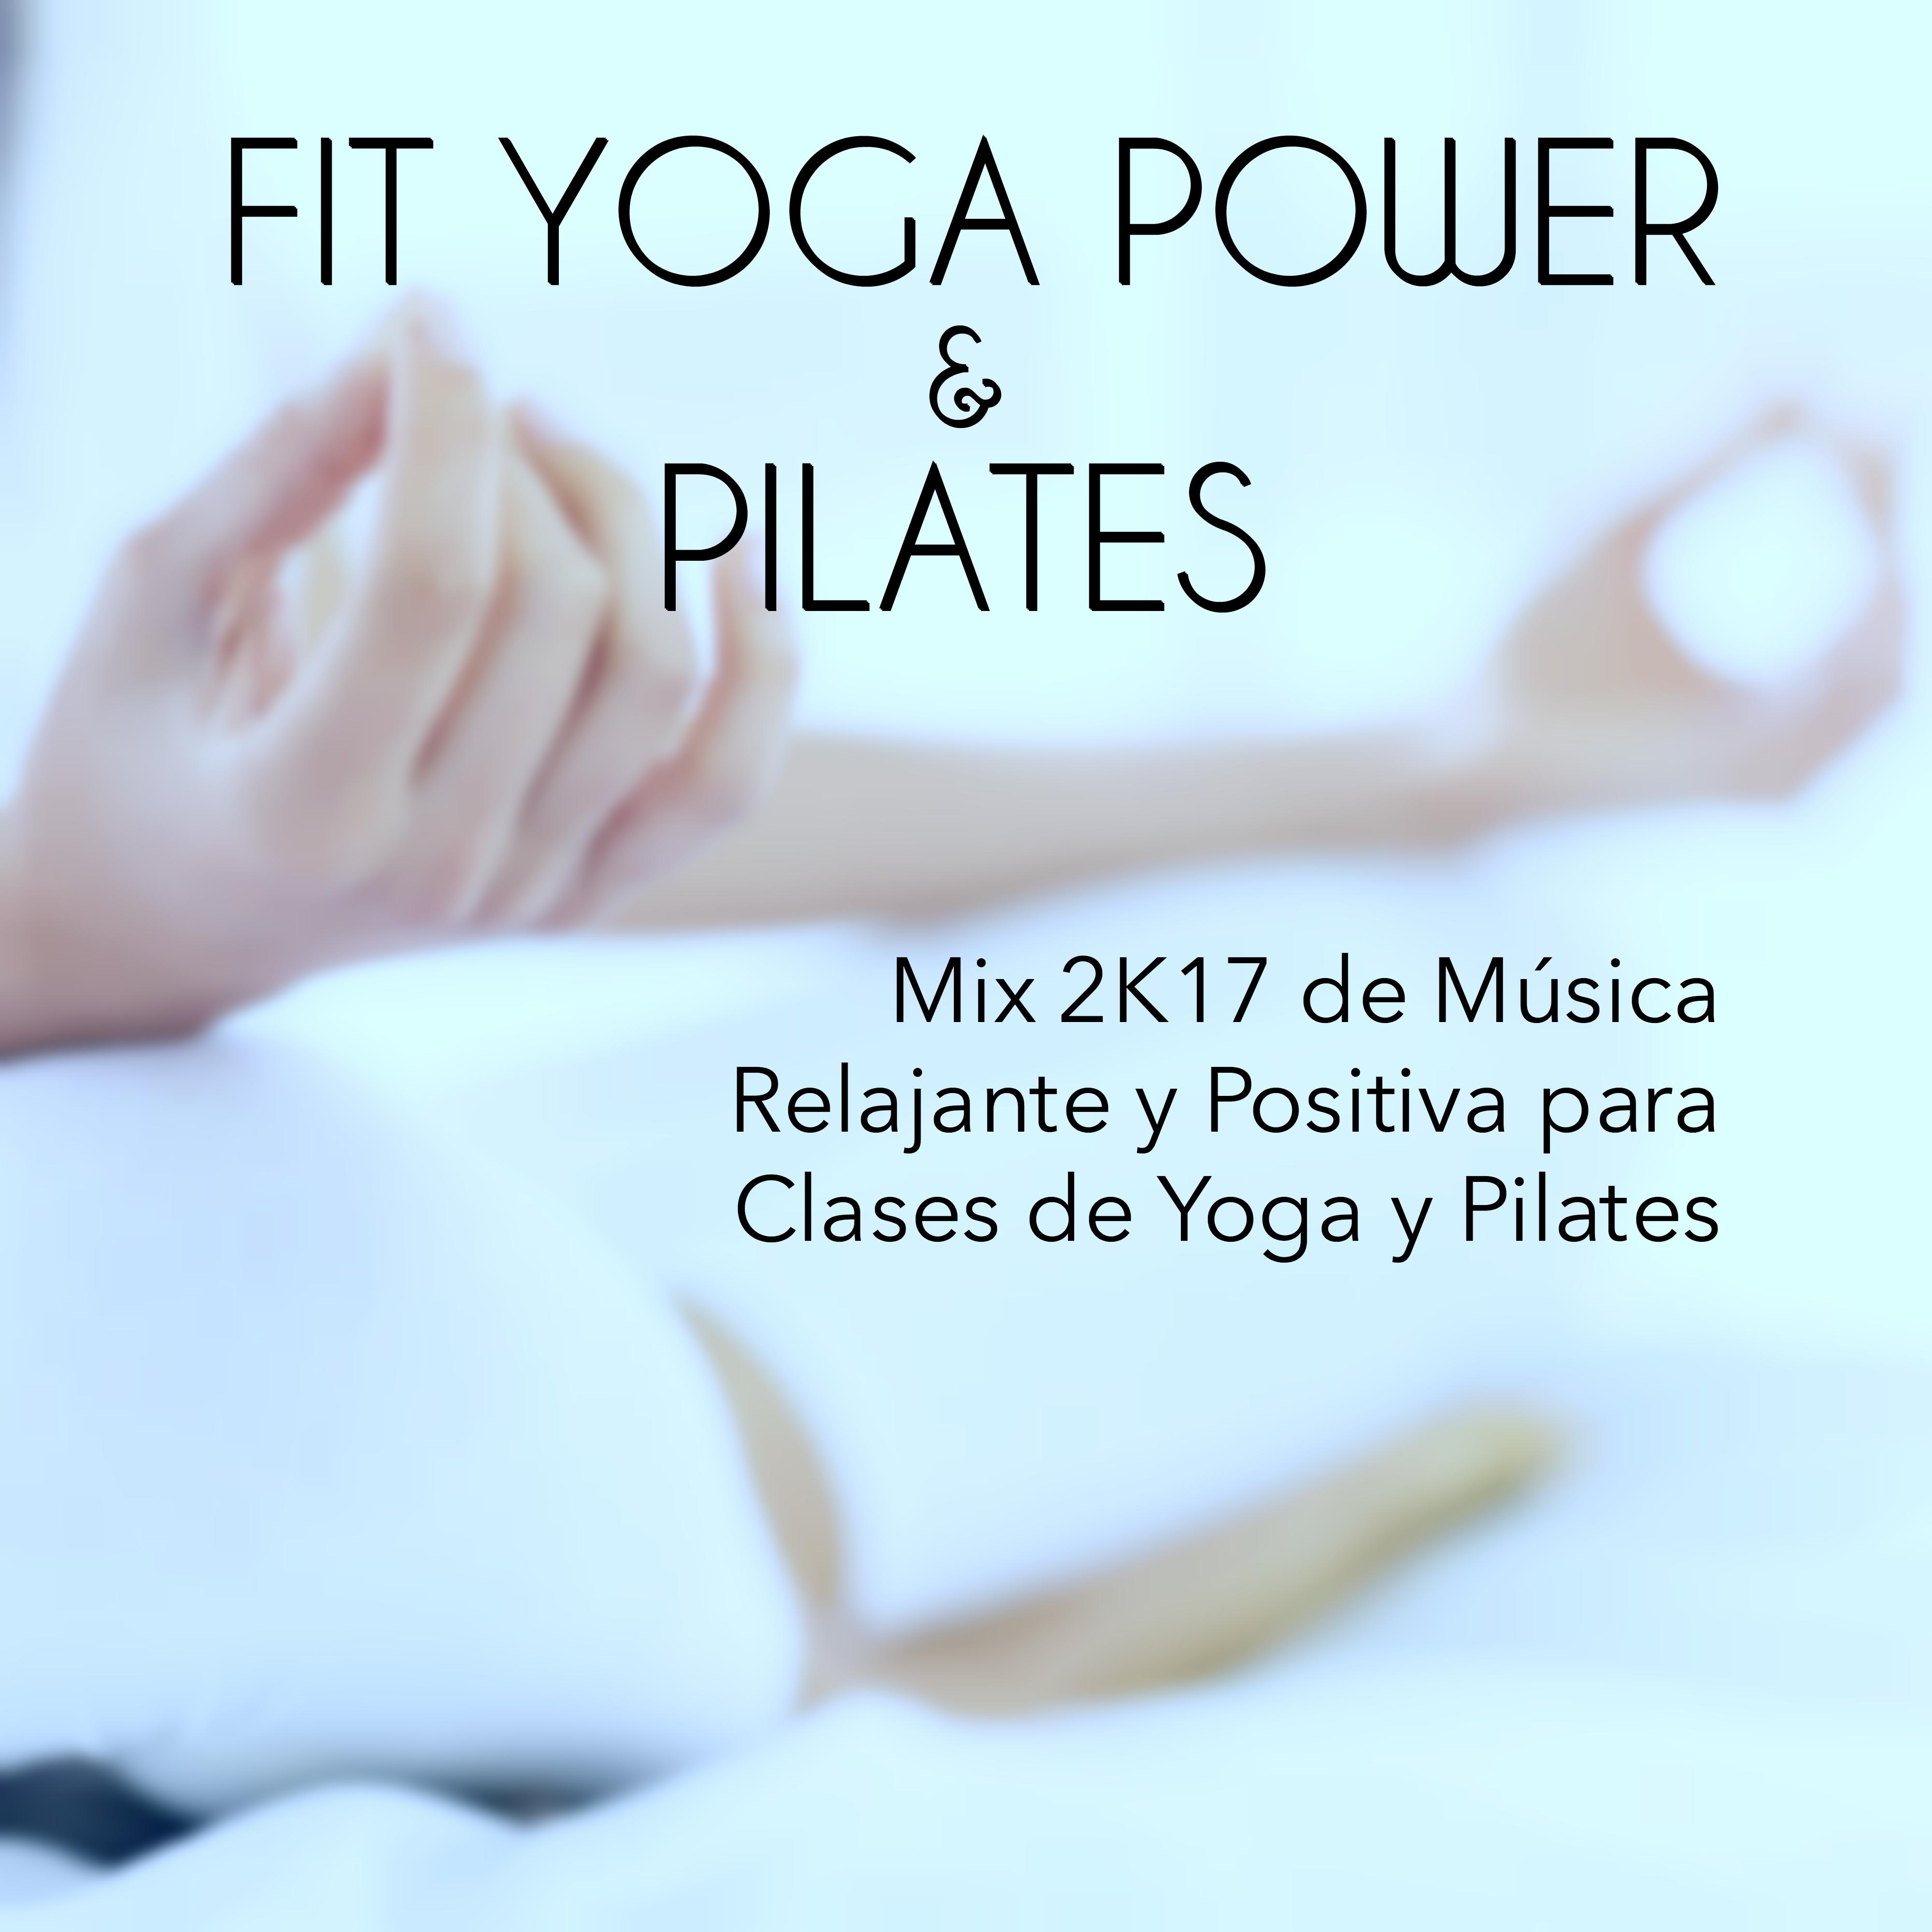 Colleccion Fit Yoga Power y Pilates  Mix 2K17 de Mu sica Relajante y Positiva para Clases de Yoga y Pilates, Canciones para el Gimnasia Cerebral